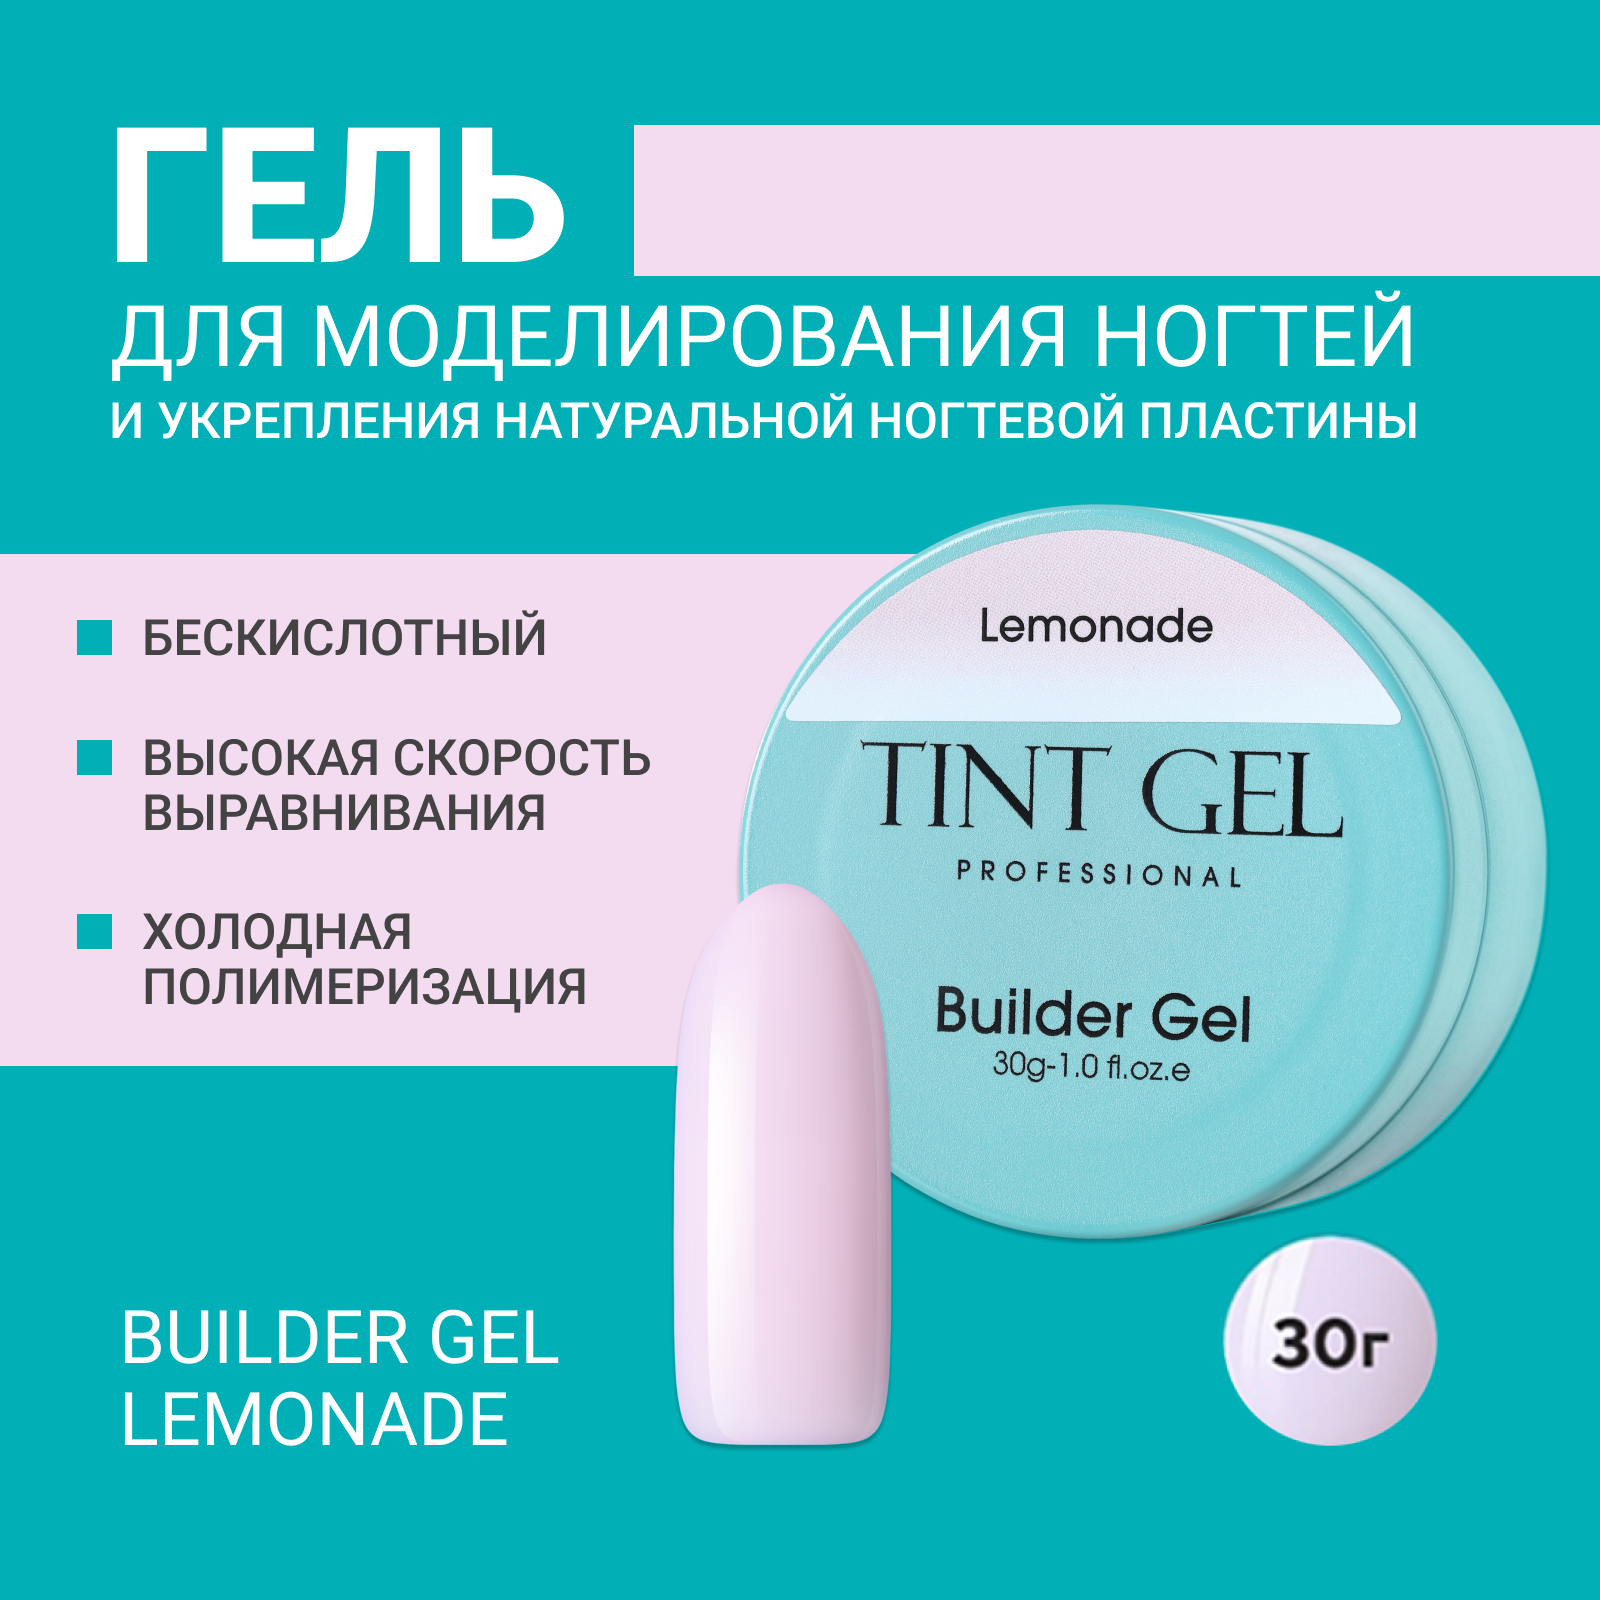 Гель Tint Gel Professional Builder gel Lemonade 30 г ной гель tint 000519 5 12 5 12 15 мл